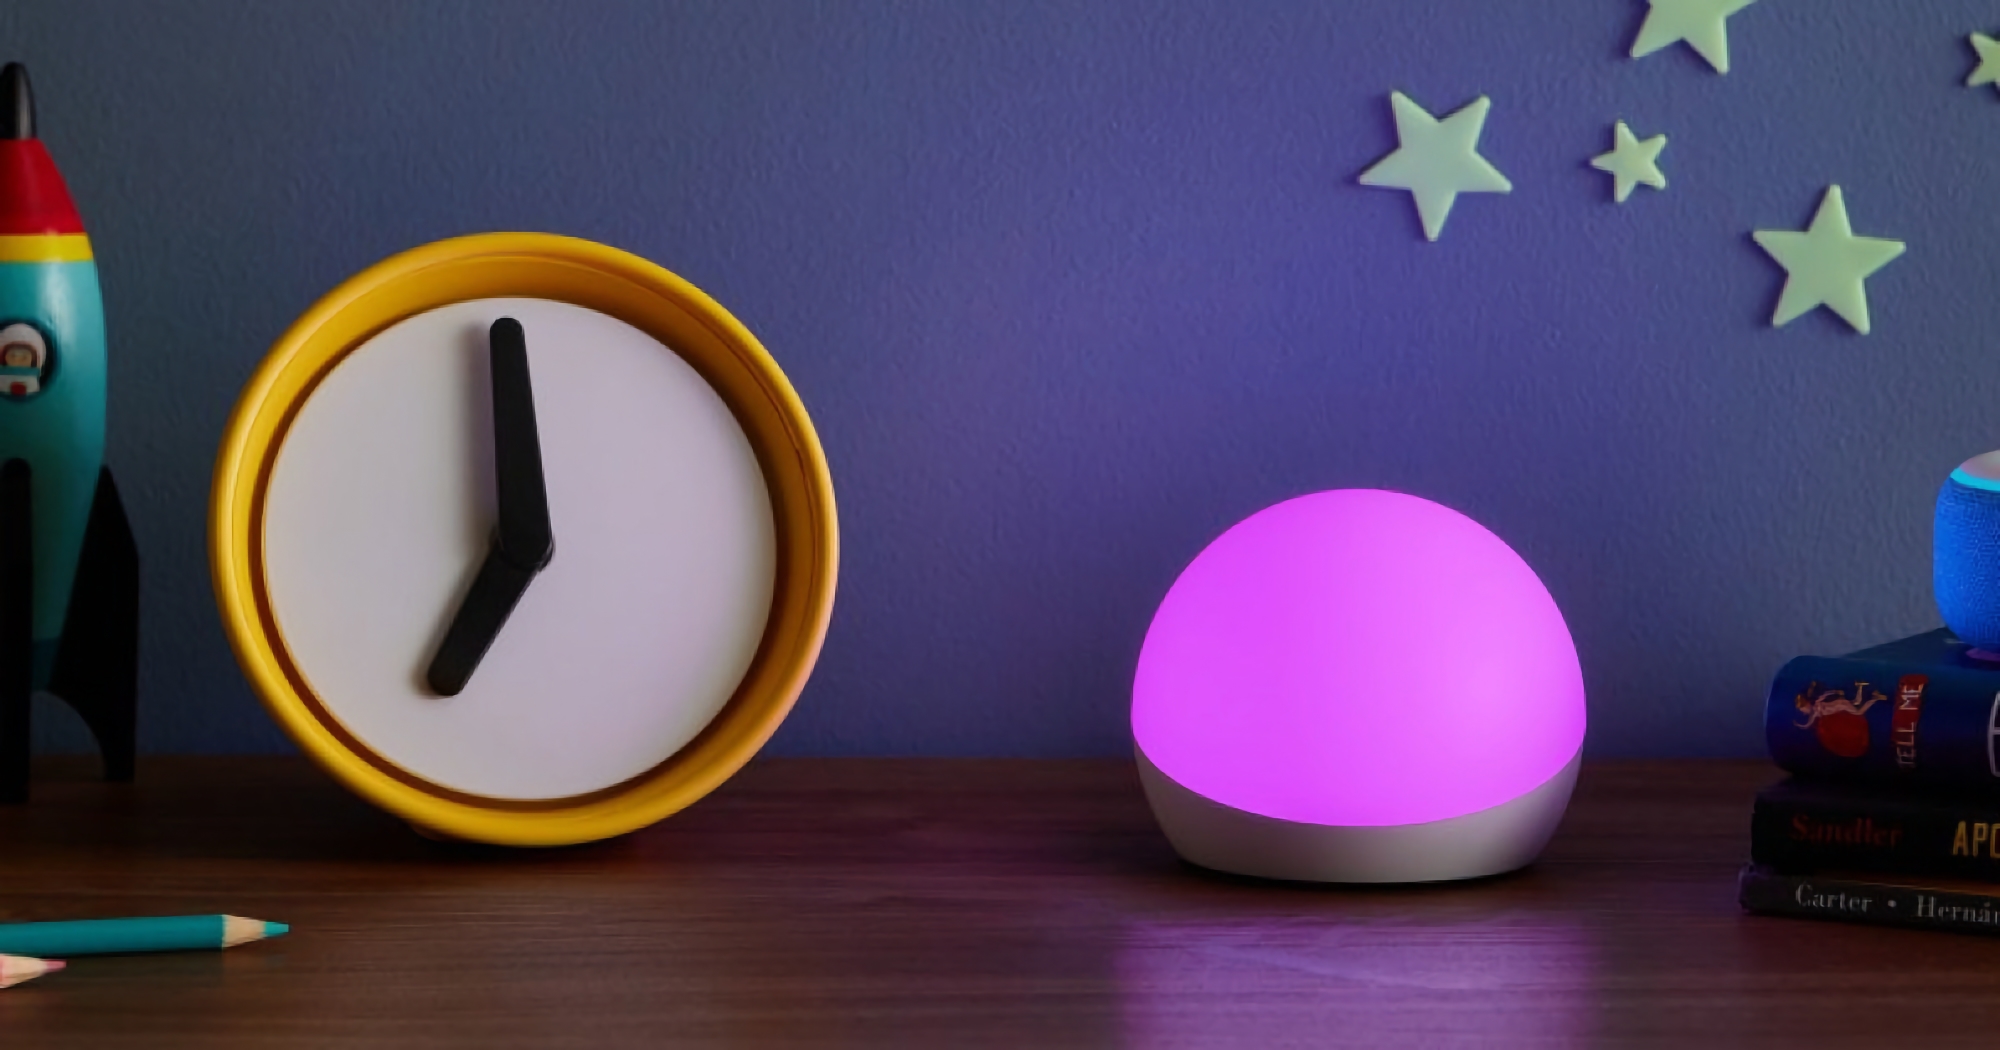 Amazon Echo Glow: lampada intelligente con assistente vocale Alexa e 33% di sconto